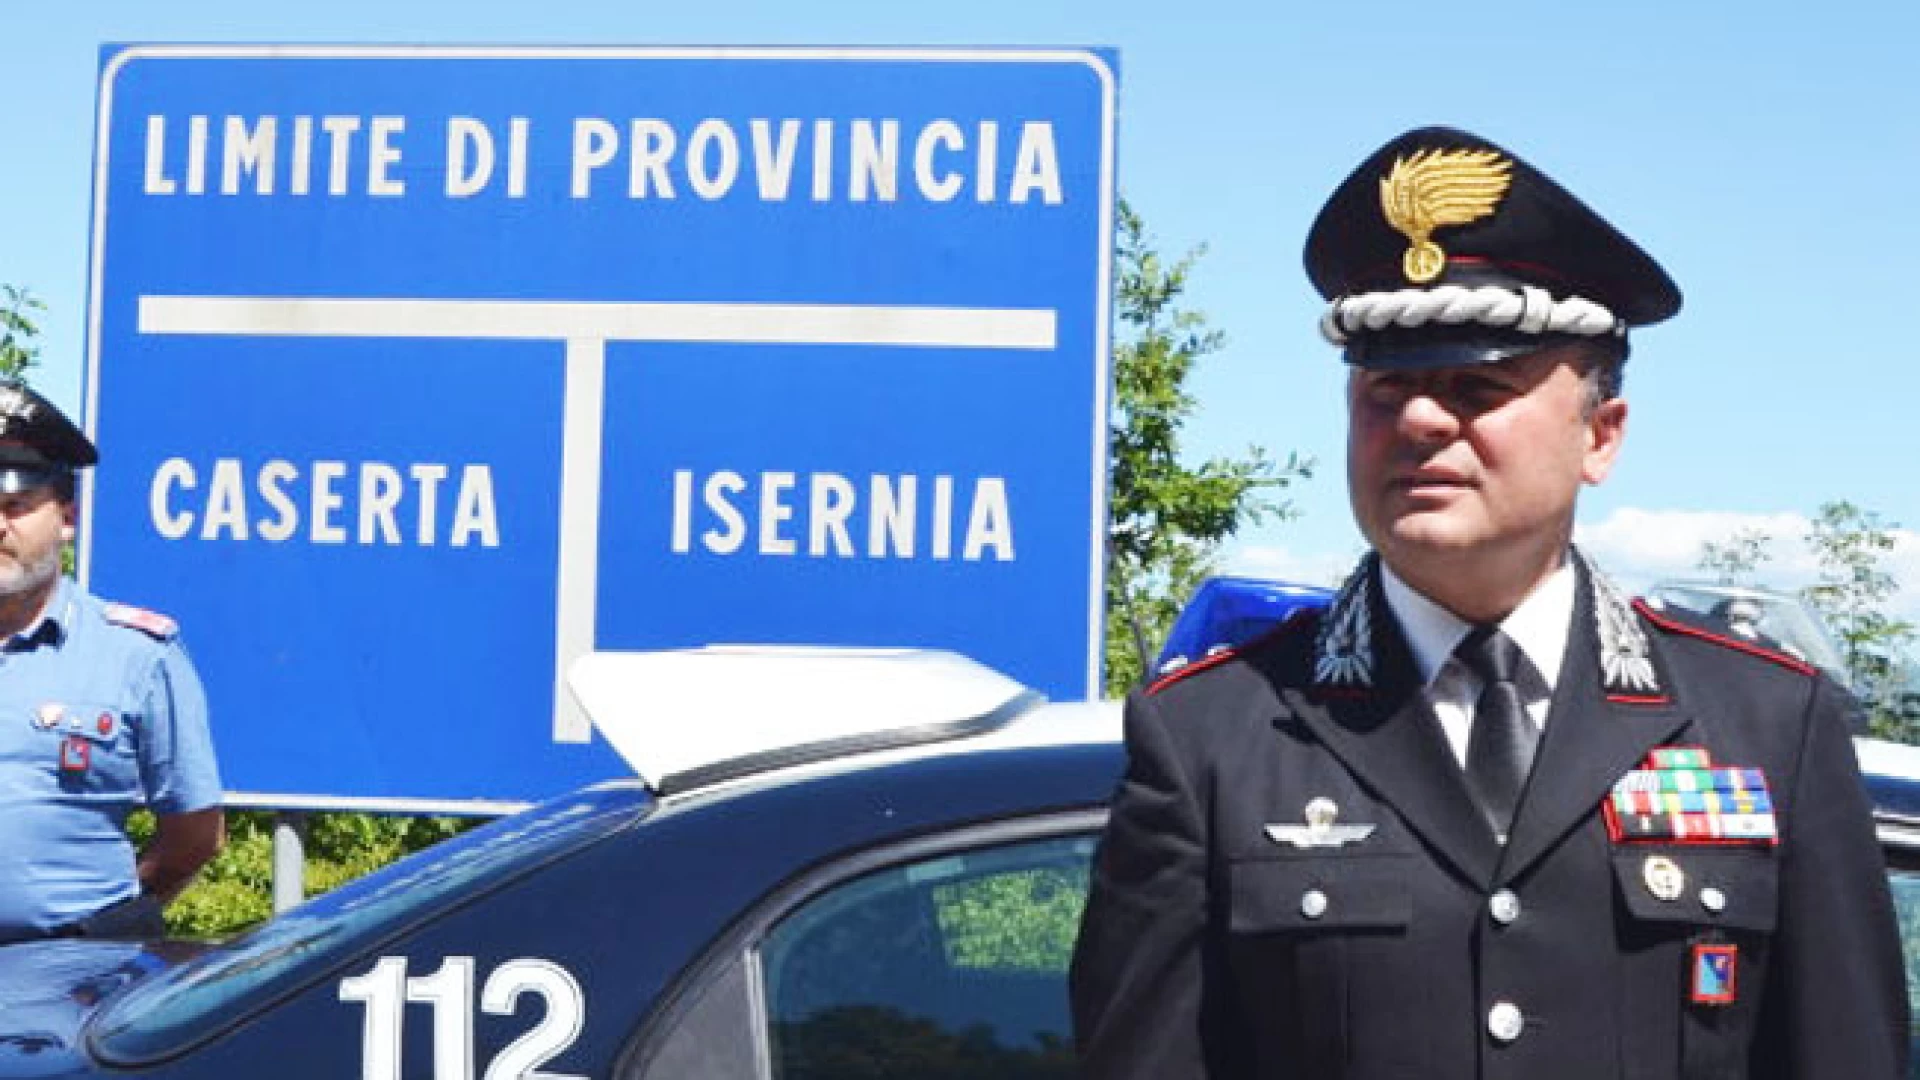 Isernia: Obiettivo “prevenzione”, controlli dei Carabinieri in tutto il territorio della provincia. Presidiate le aree a confine con la Campania.